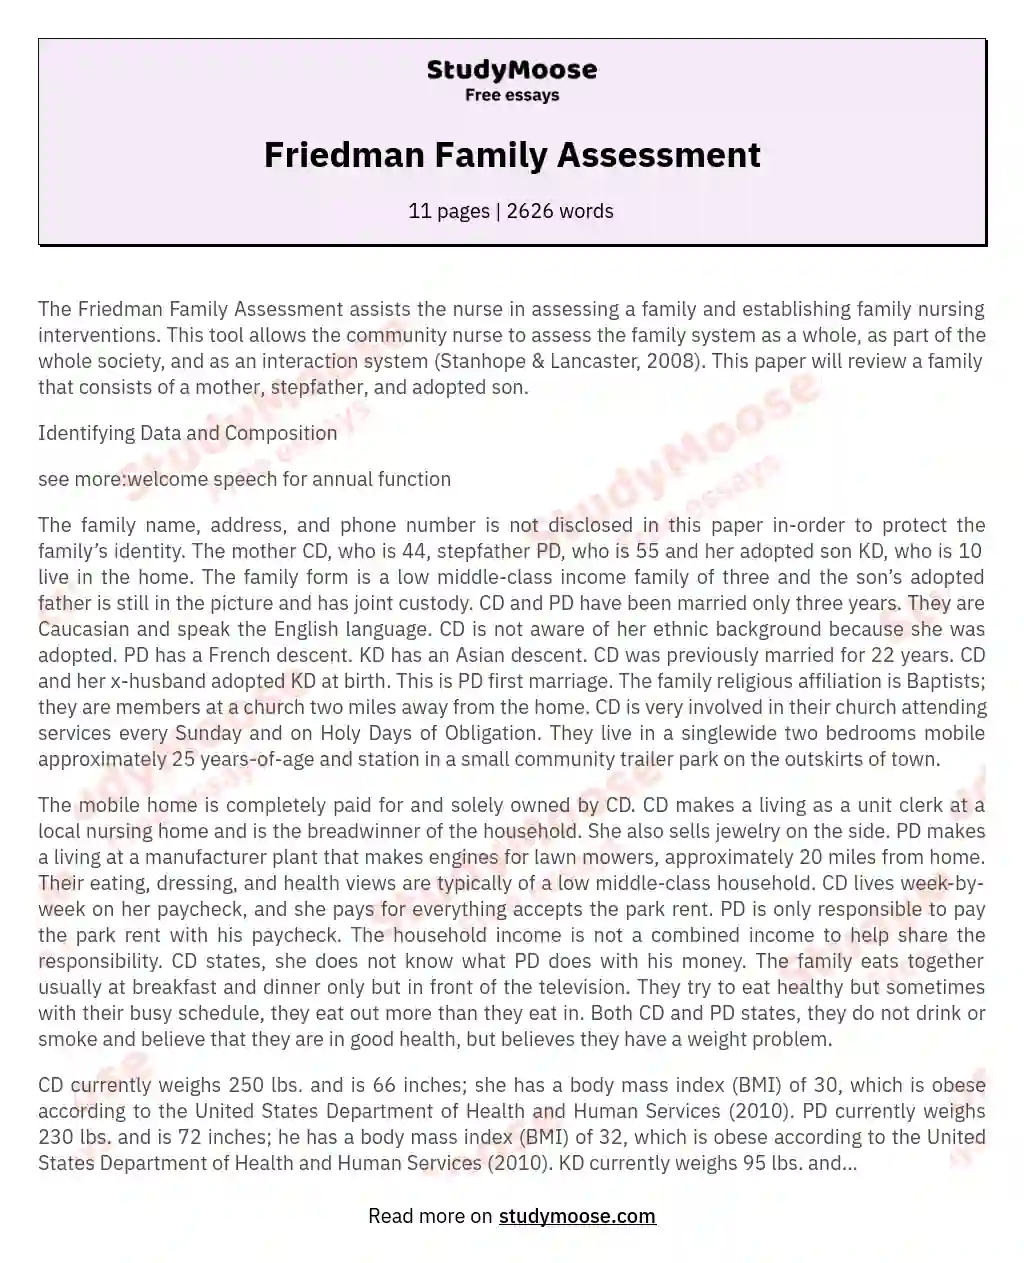 Friedman Family Assessment essay